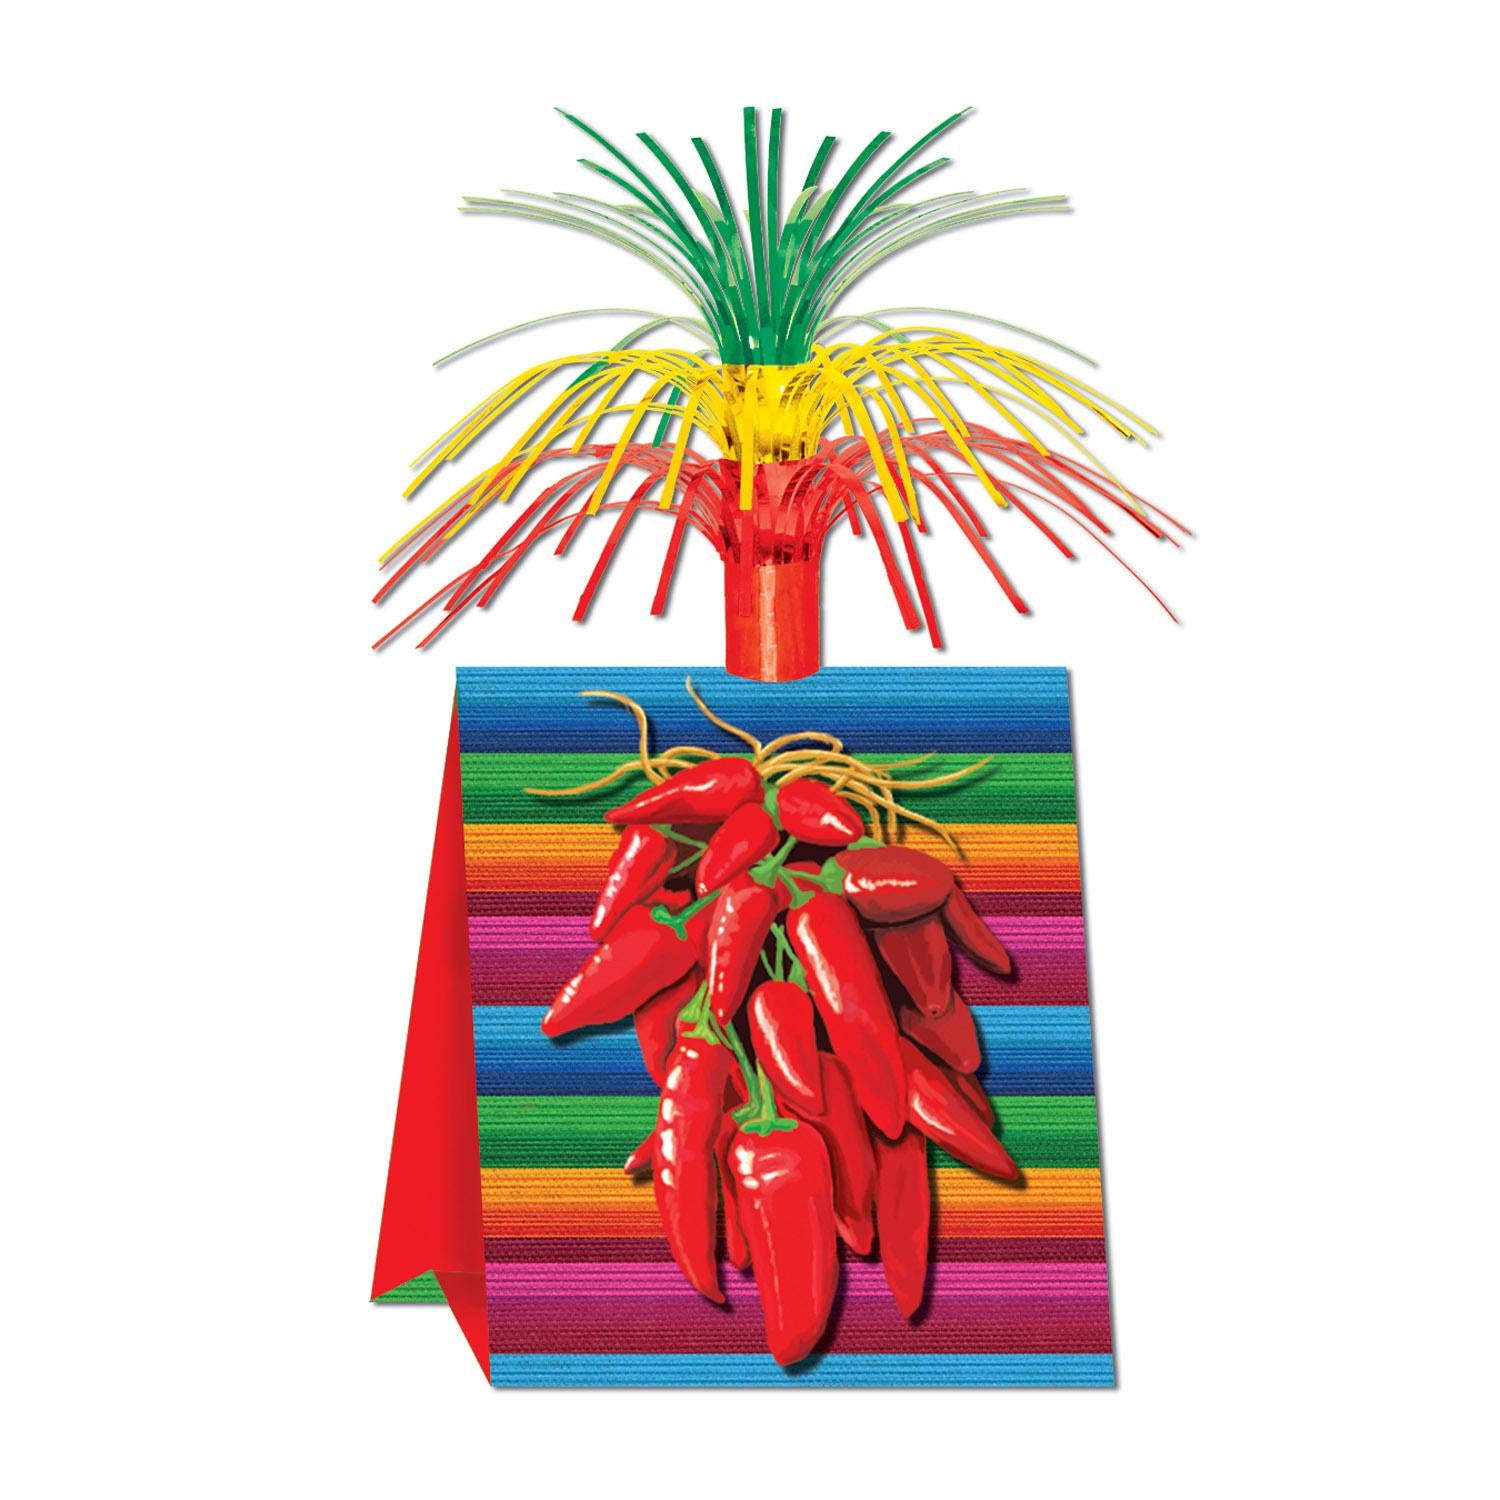 Beistle Fiesta Chili Pepper Centerpiece